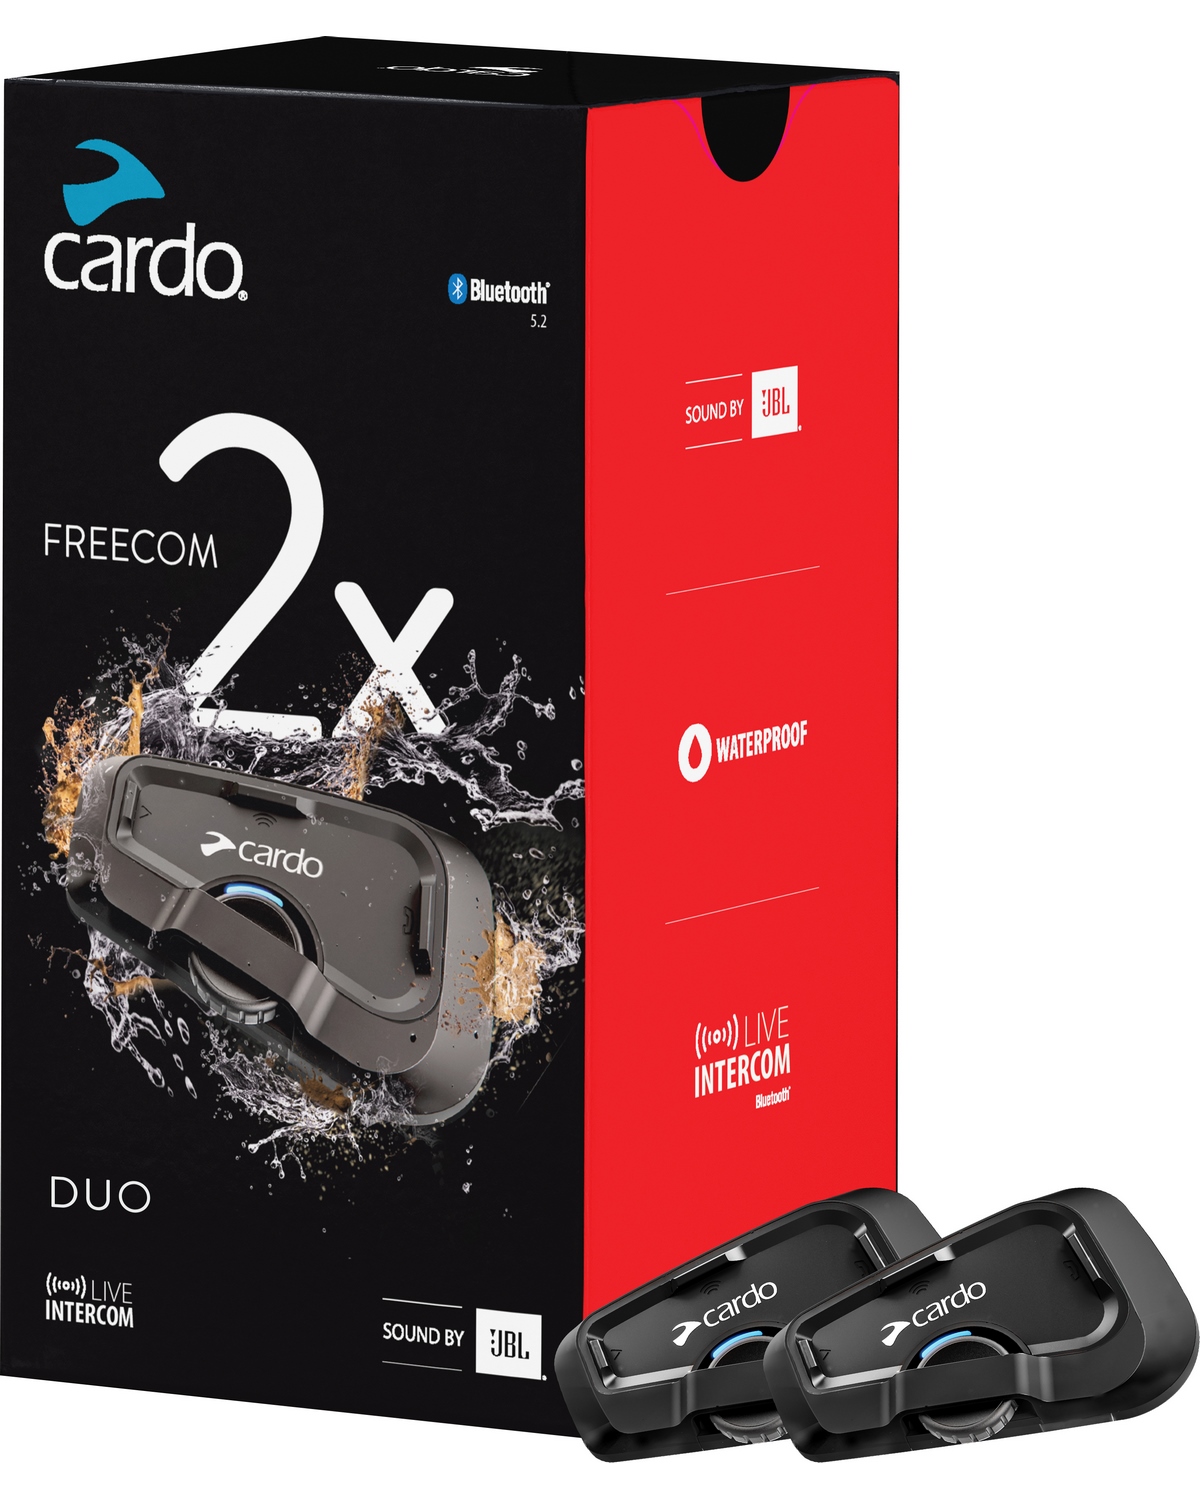 Intercom Moto Cardo Intercom Freecom 2x Duo - Livraison Offerte 